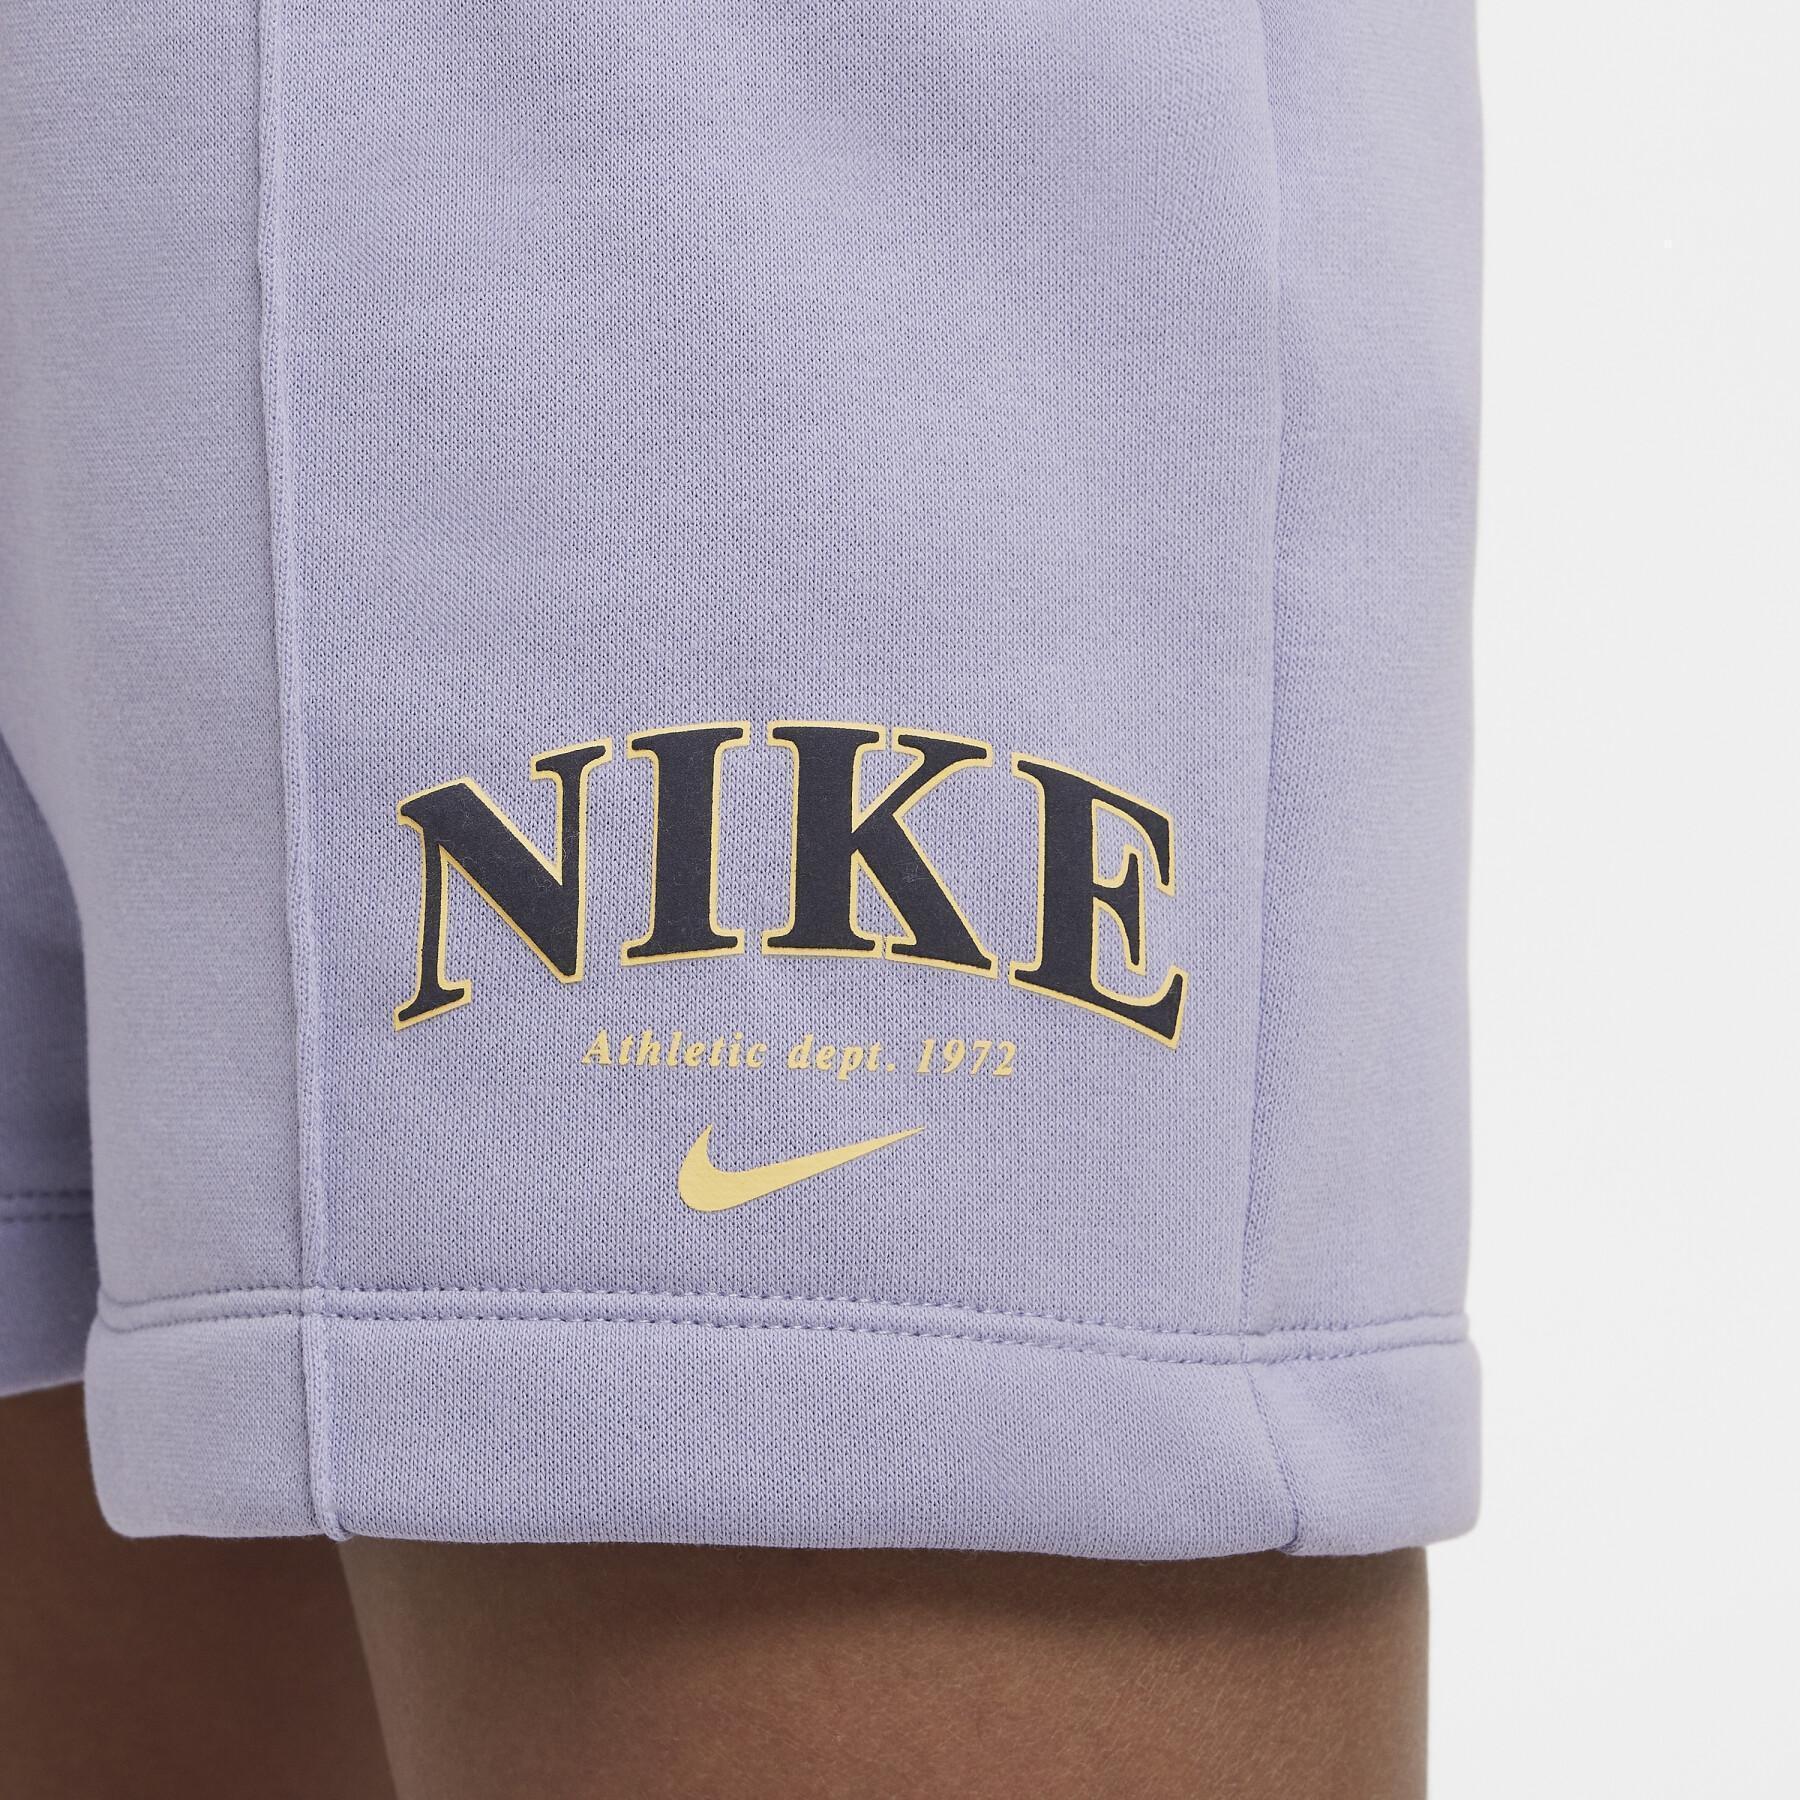 Pantalones cortos para niña Nike Trend